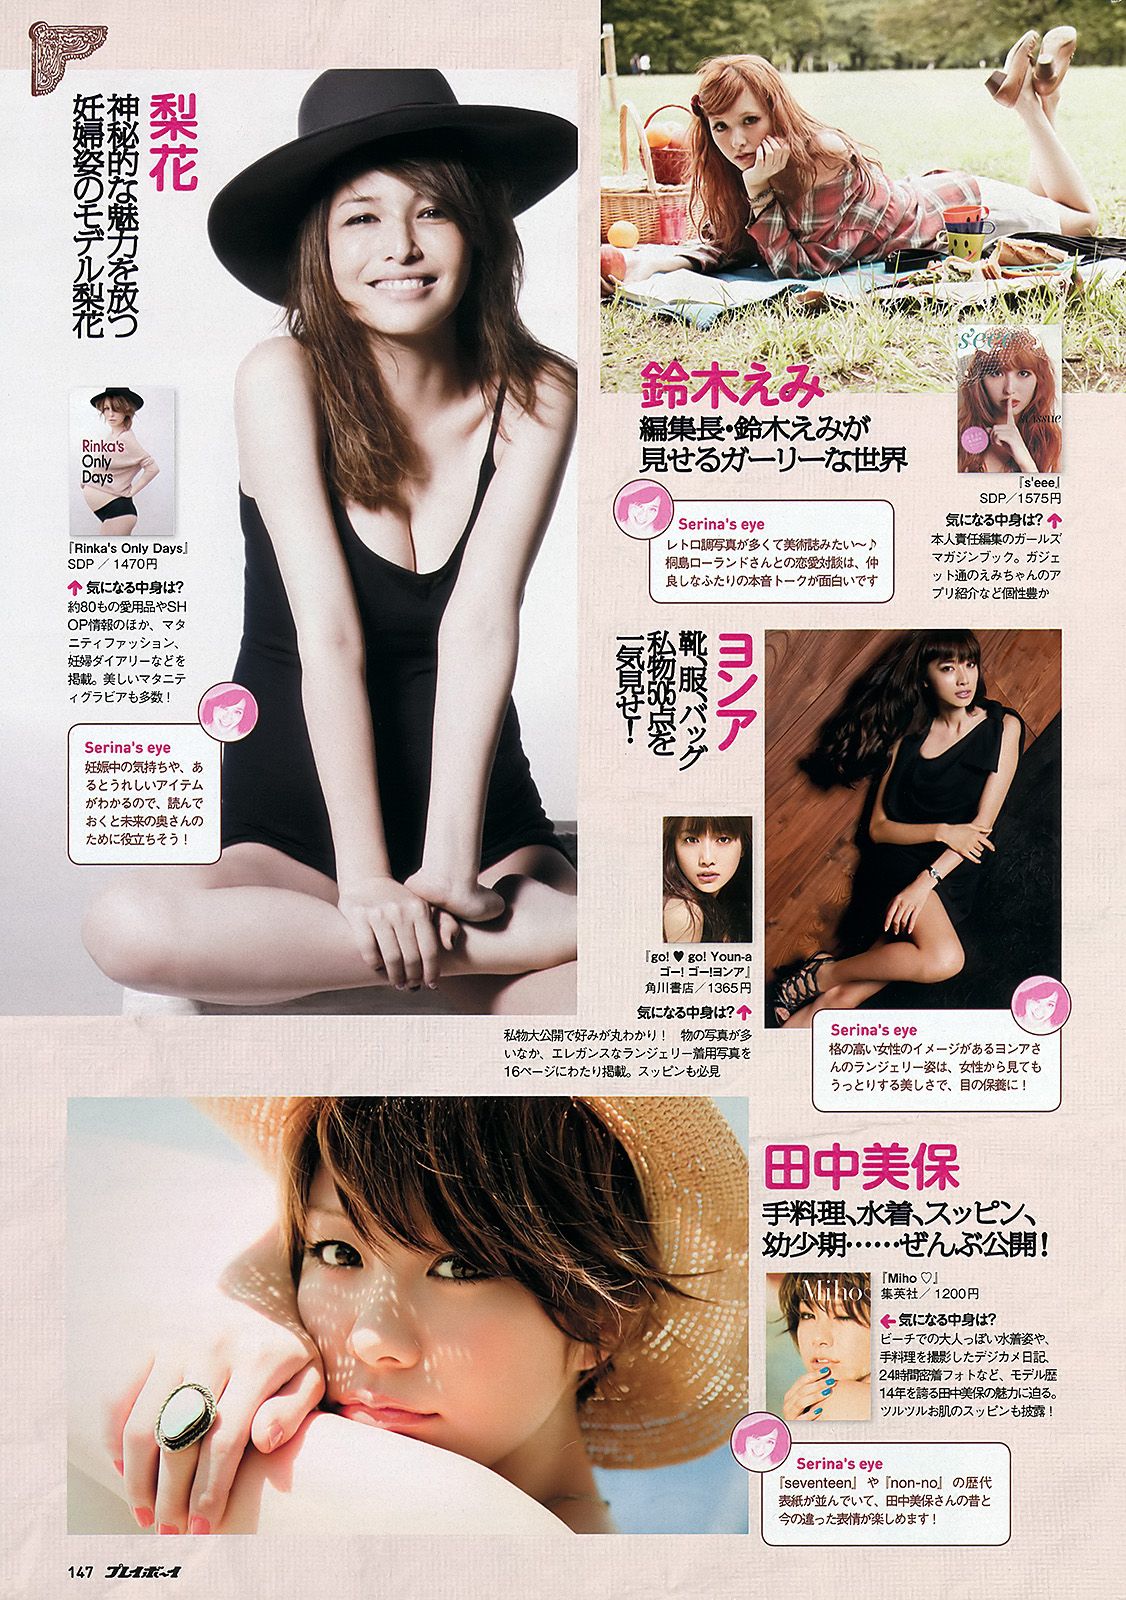 Atsuko Maeda Riria Wada Eri Wada Chihiro Terada Yukie Kawamura Rino Sashihara Yuai Kana [Wöchentlicher Playboy] 2012 No.05 Foto Seite 18 No.9dc423